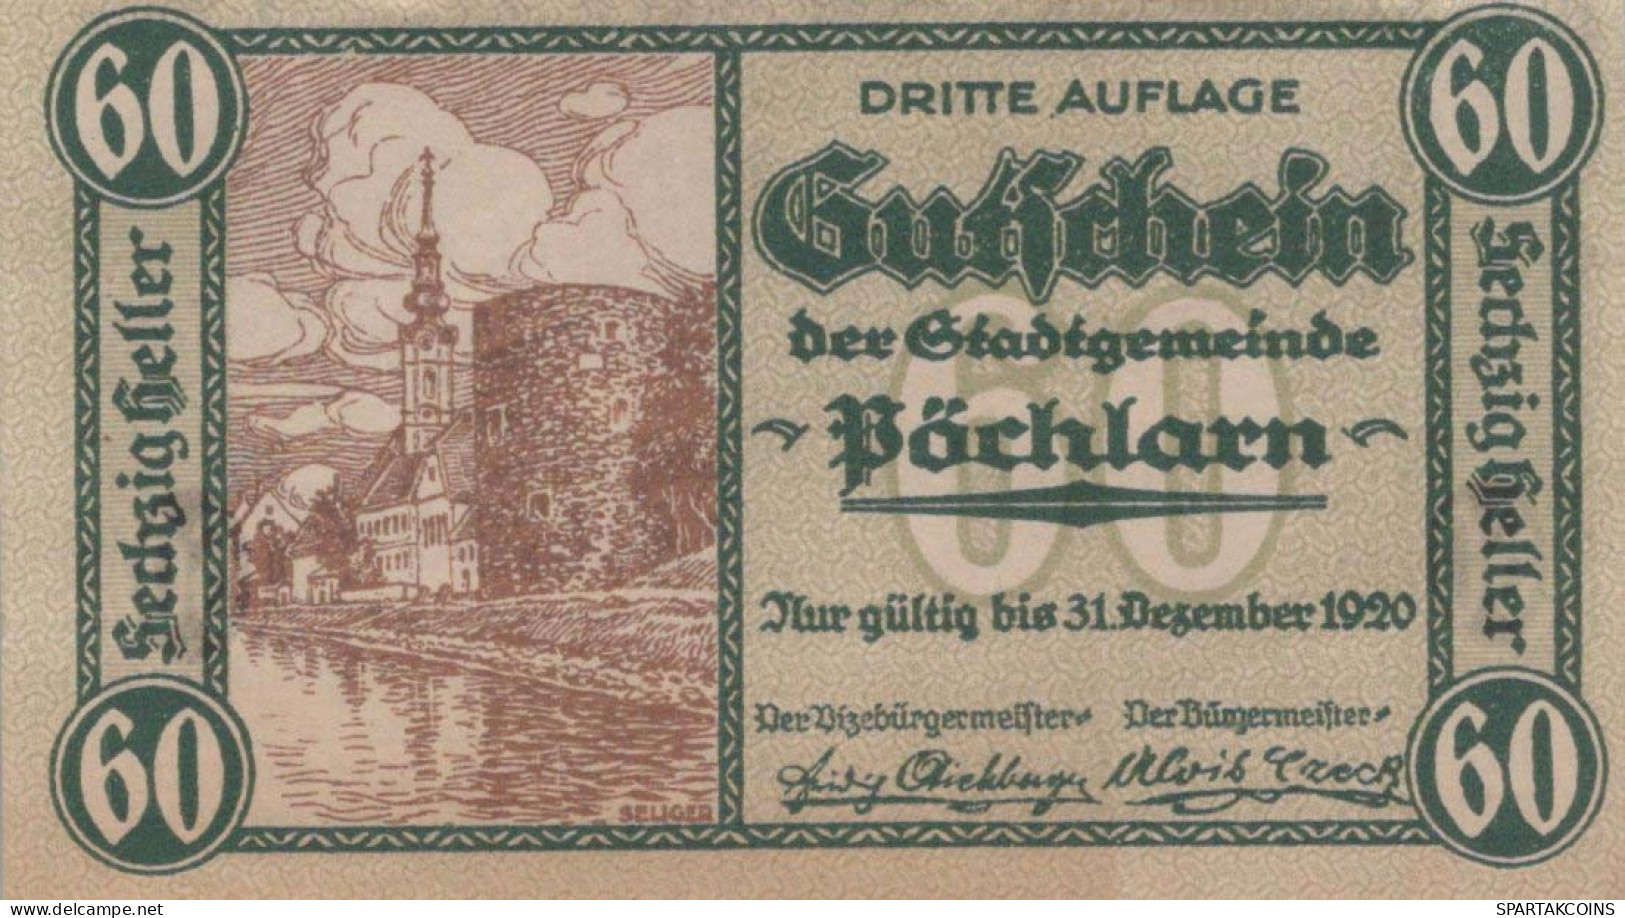 60 HELLER 1920 Stadt PoCHLARN Niedrigeren Österreich Notgeld Banknote #PE361 - Lokale Ausgaben